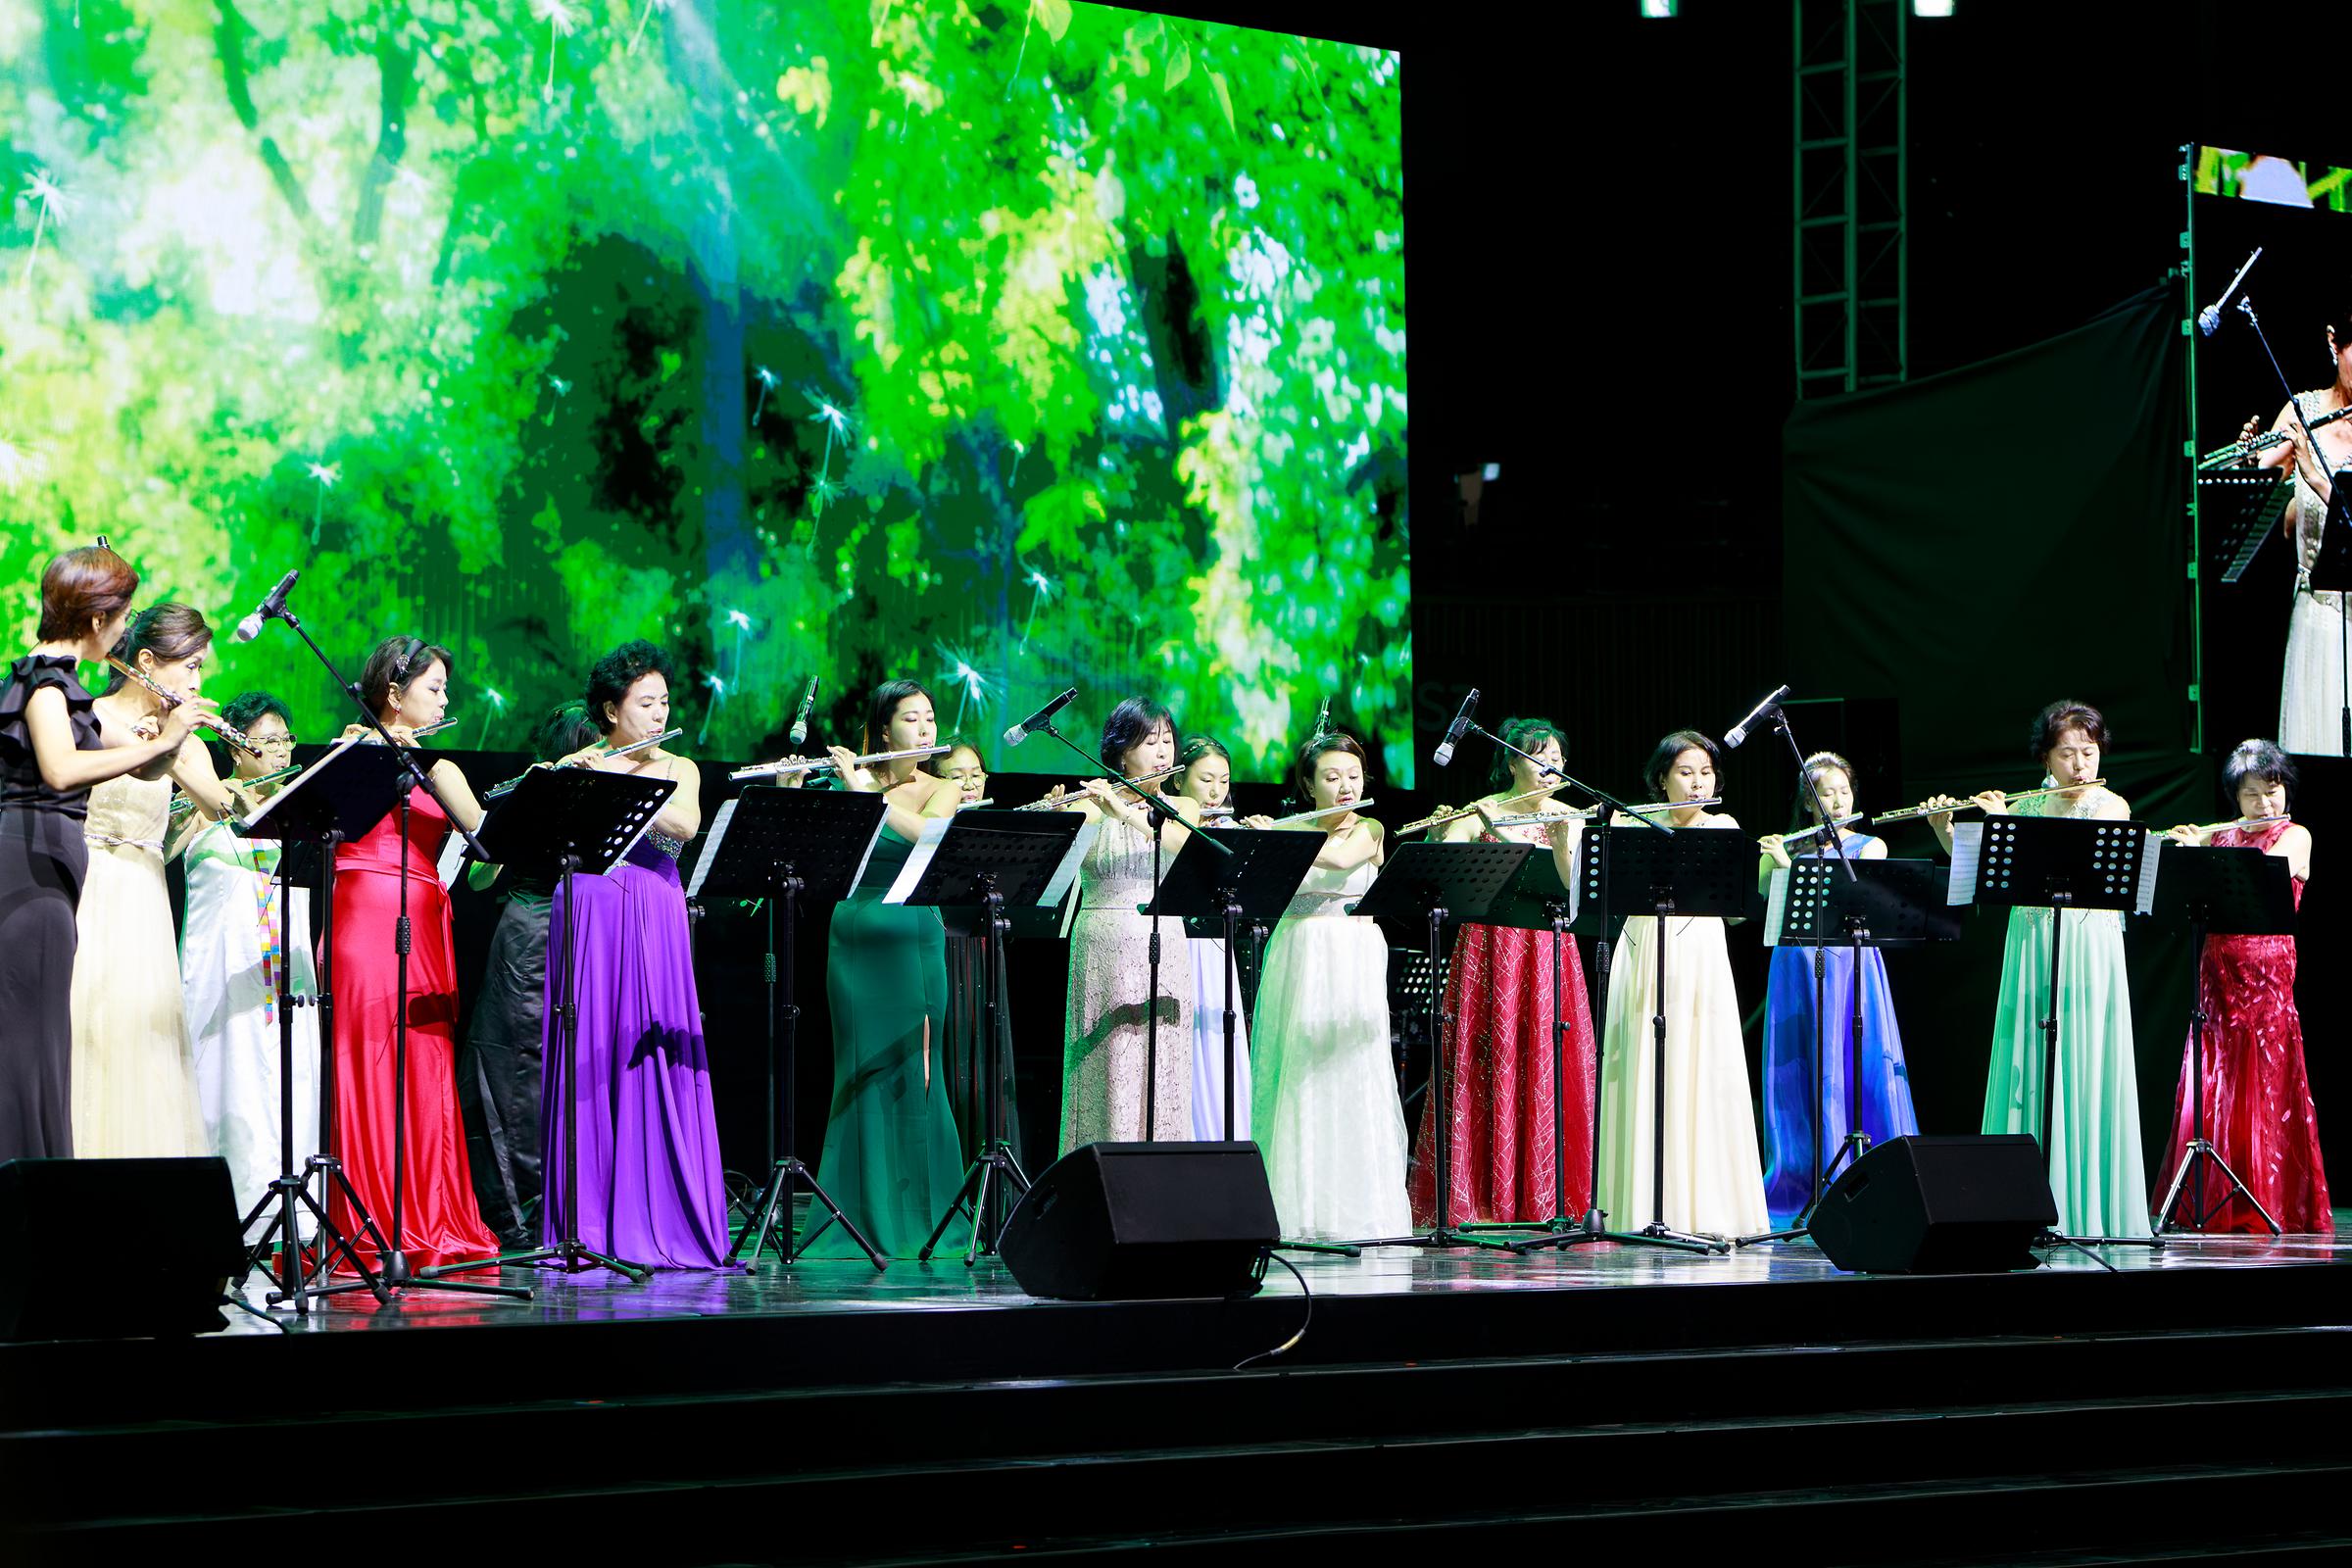 플룻 동호회의 무대 사진.드레스를 입은 다수의 여성으로 이루어져있다.